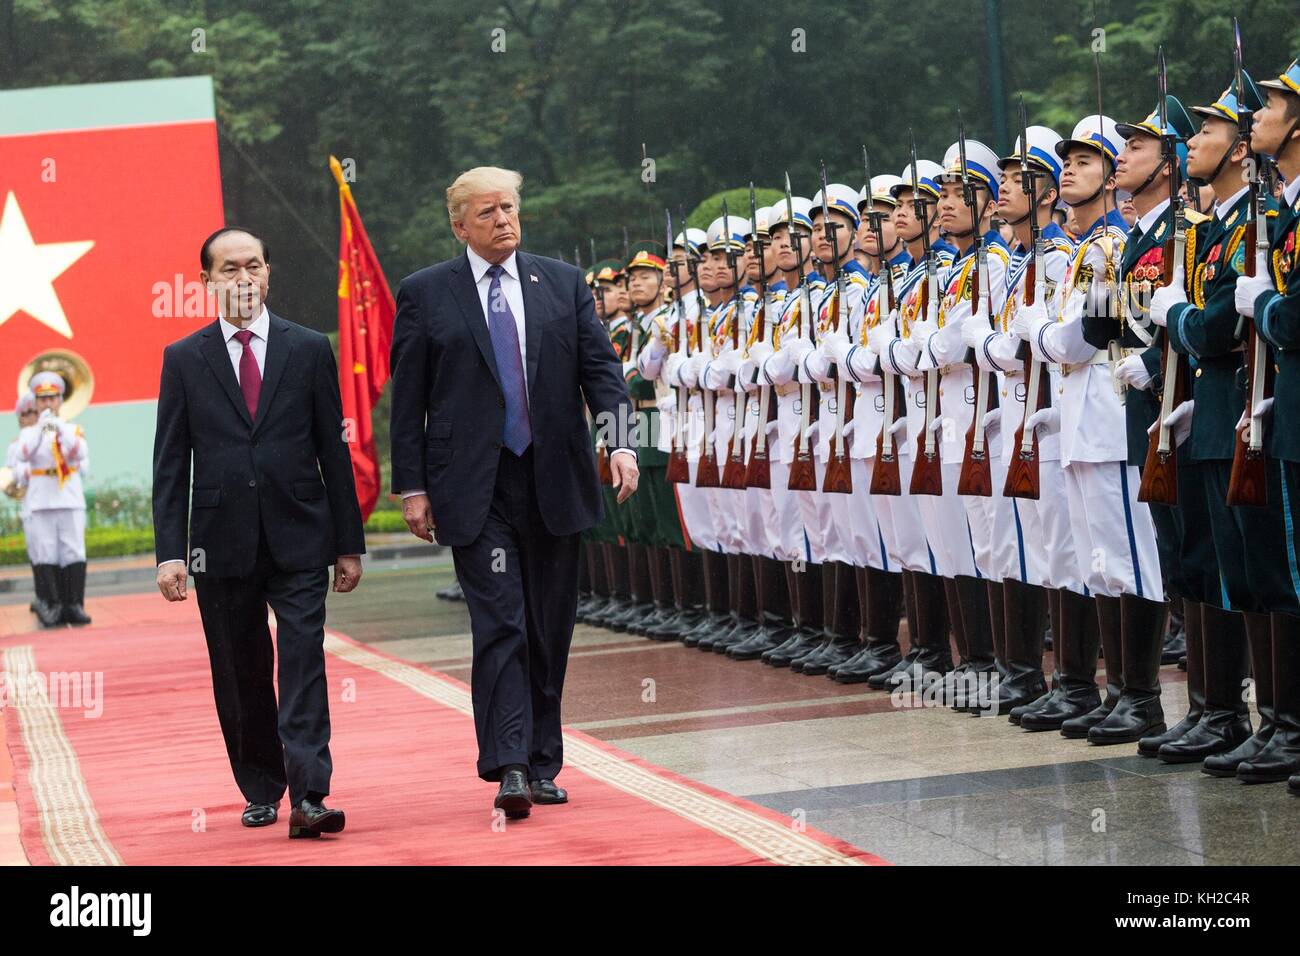 Le président américain Donald Trump, droite, commentaires de la garde d'honneur escorté par le président vietnamien tran dai Quang, gauche, au cours de la cérémonie d'arrivée officielle pour la visite d'État à la suite du sommet de l'apec le 11 novembre 2017 à Hanoi, Vietnam. Banque D'Images